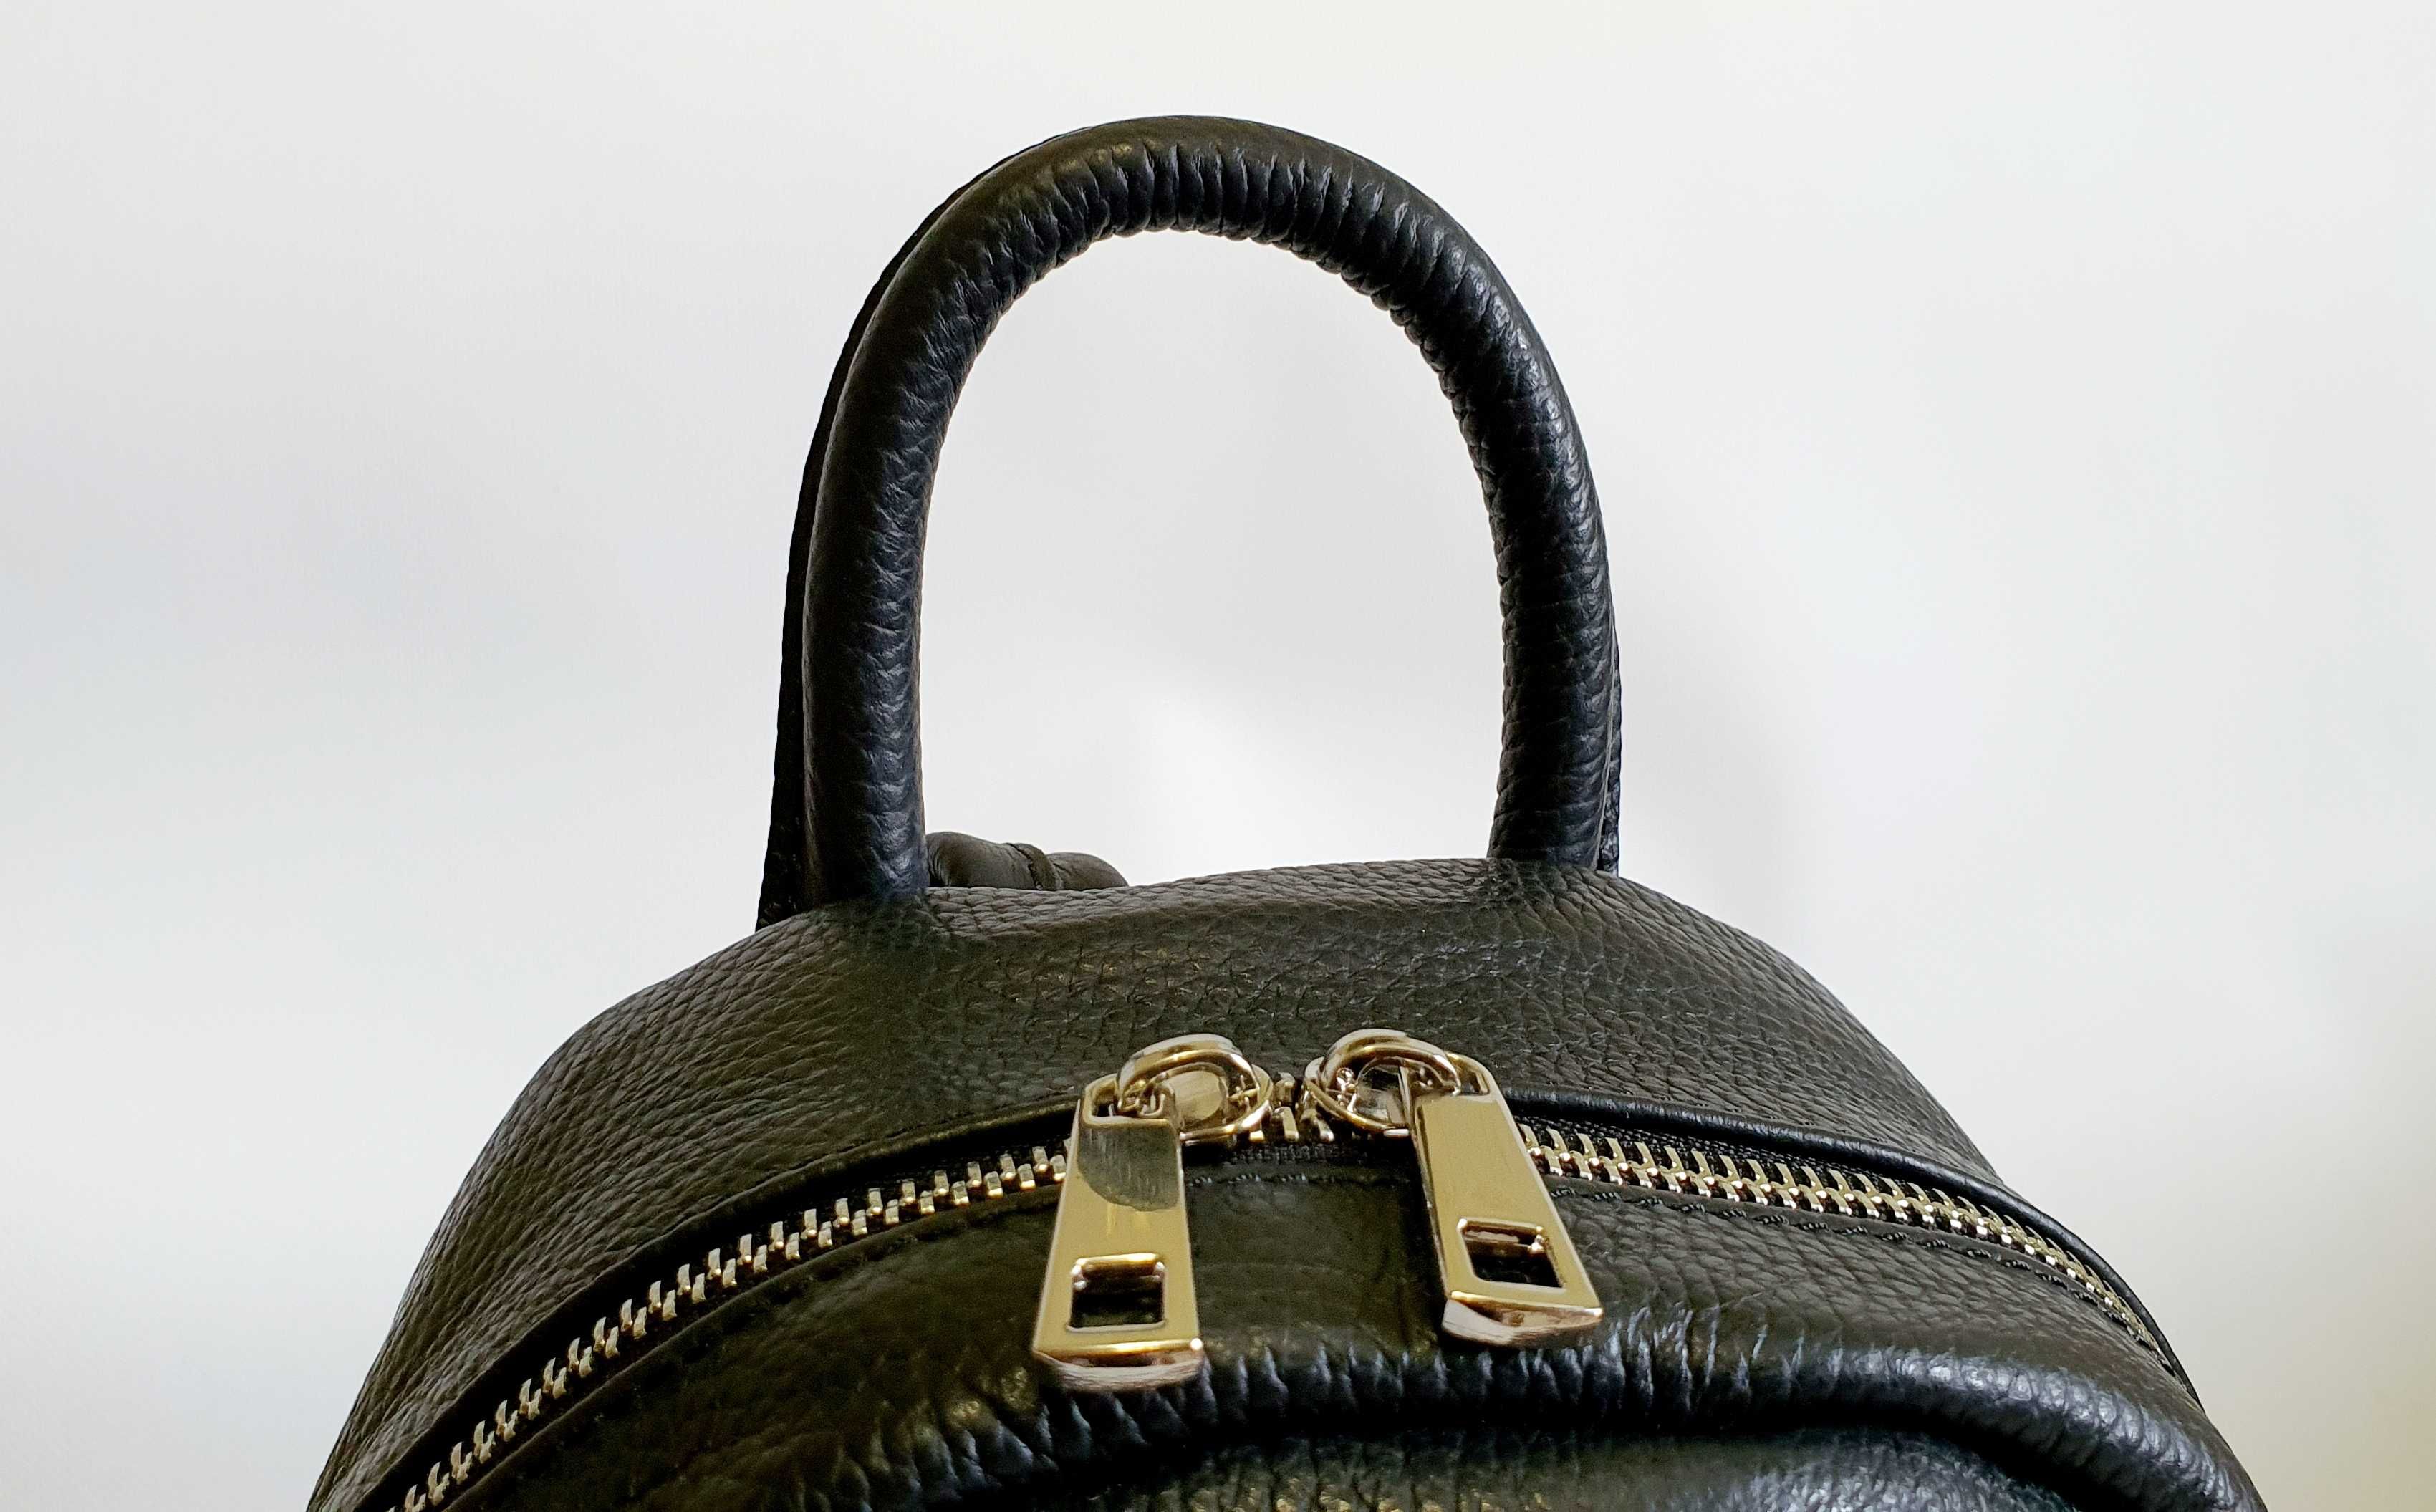 Женский кожаный рюкзак TORBAG Черный